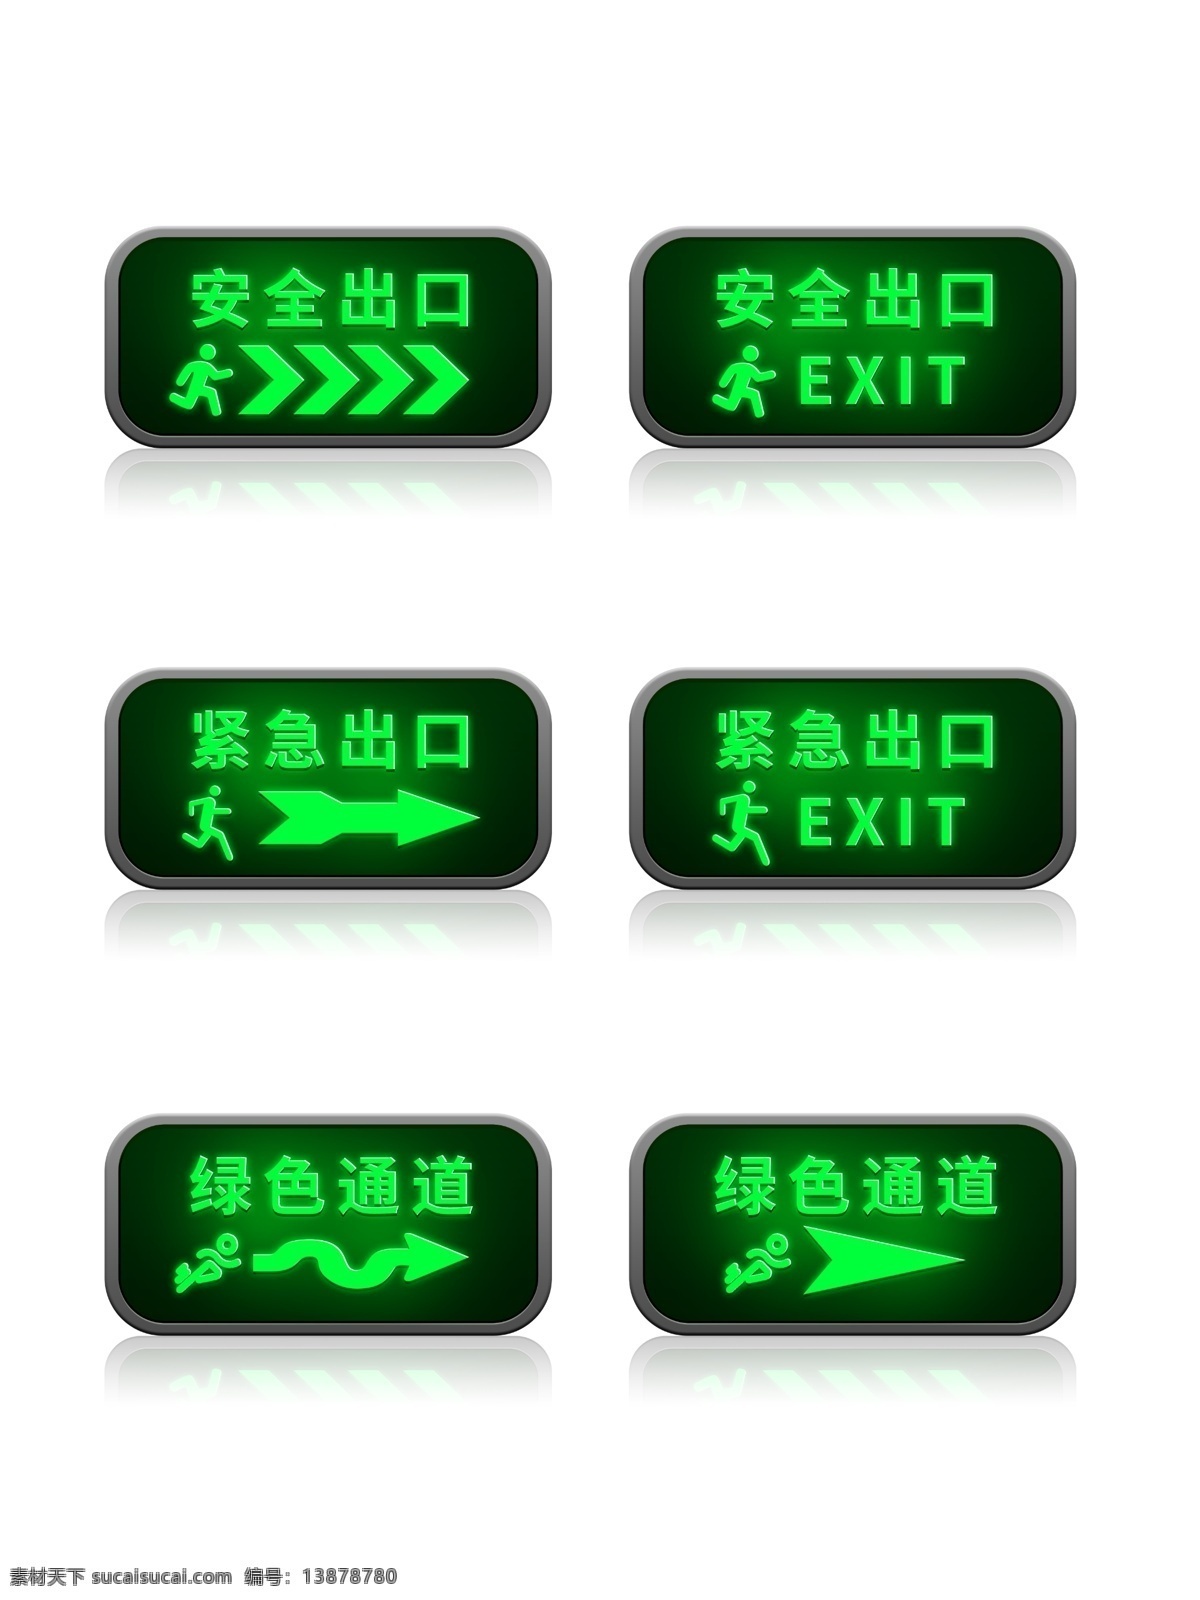 安全 紧急 出口 图标素材 元素 安全出口 紧急出口 绿色通道 箭头指向 绿色出口